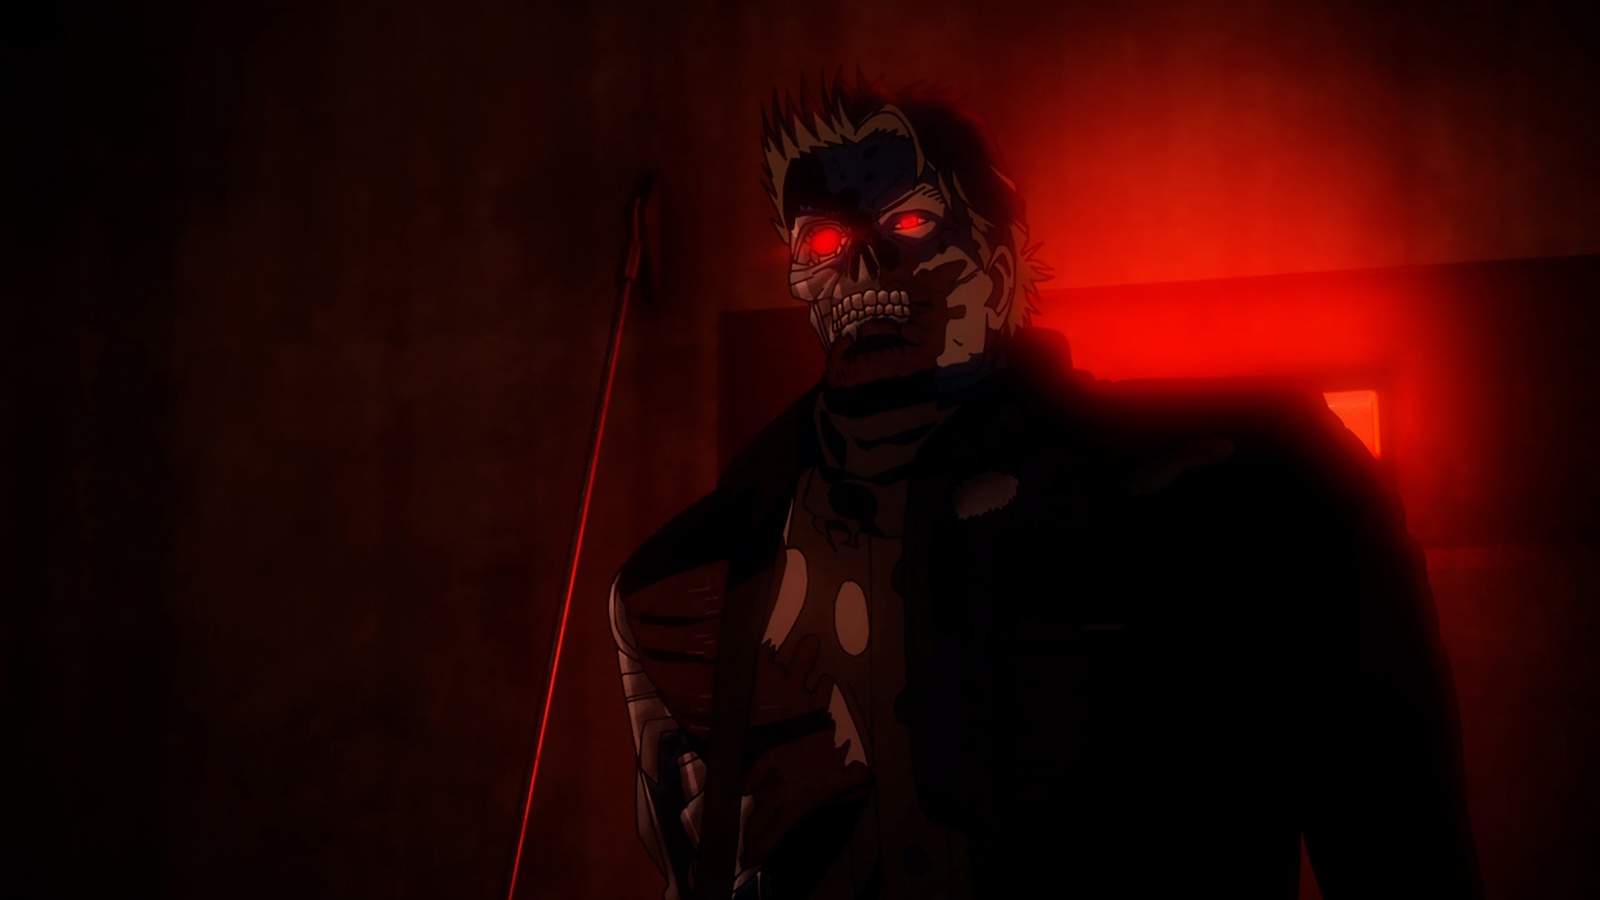 Terminator: dimenticate John Connor, il franchise sbarca a Tokyo nelle prime immagini dell'anime